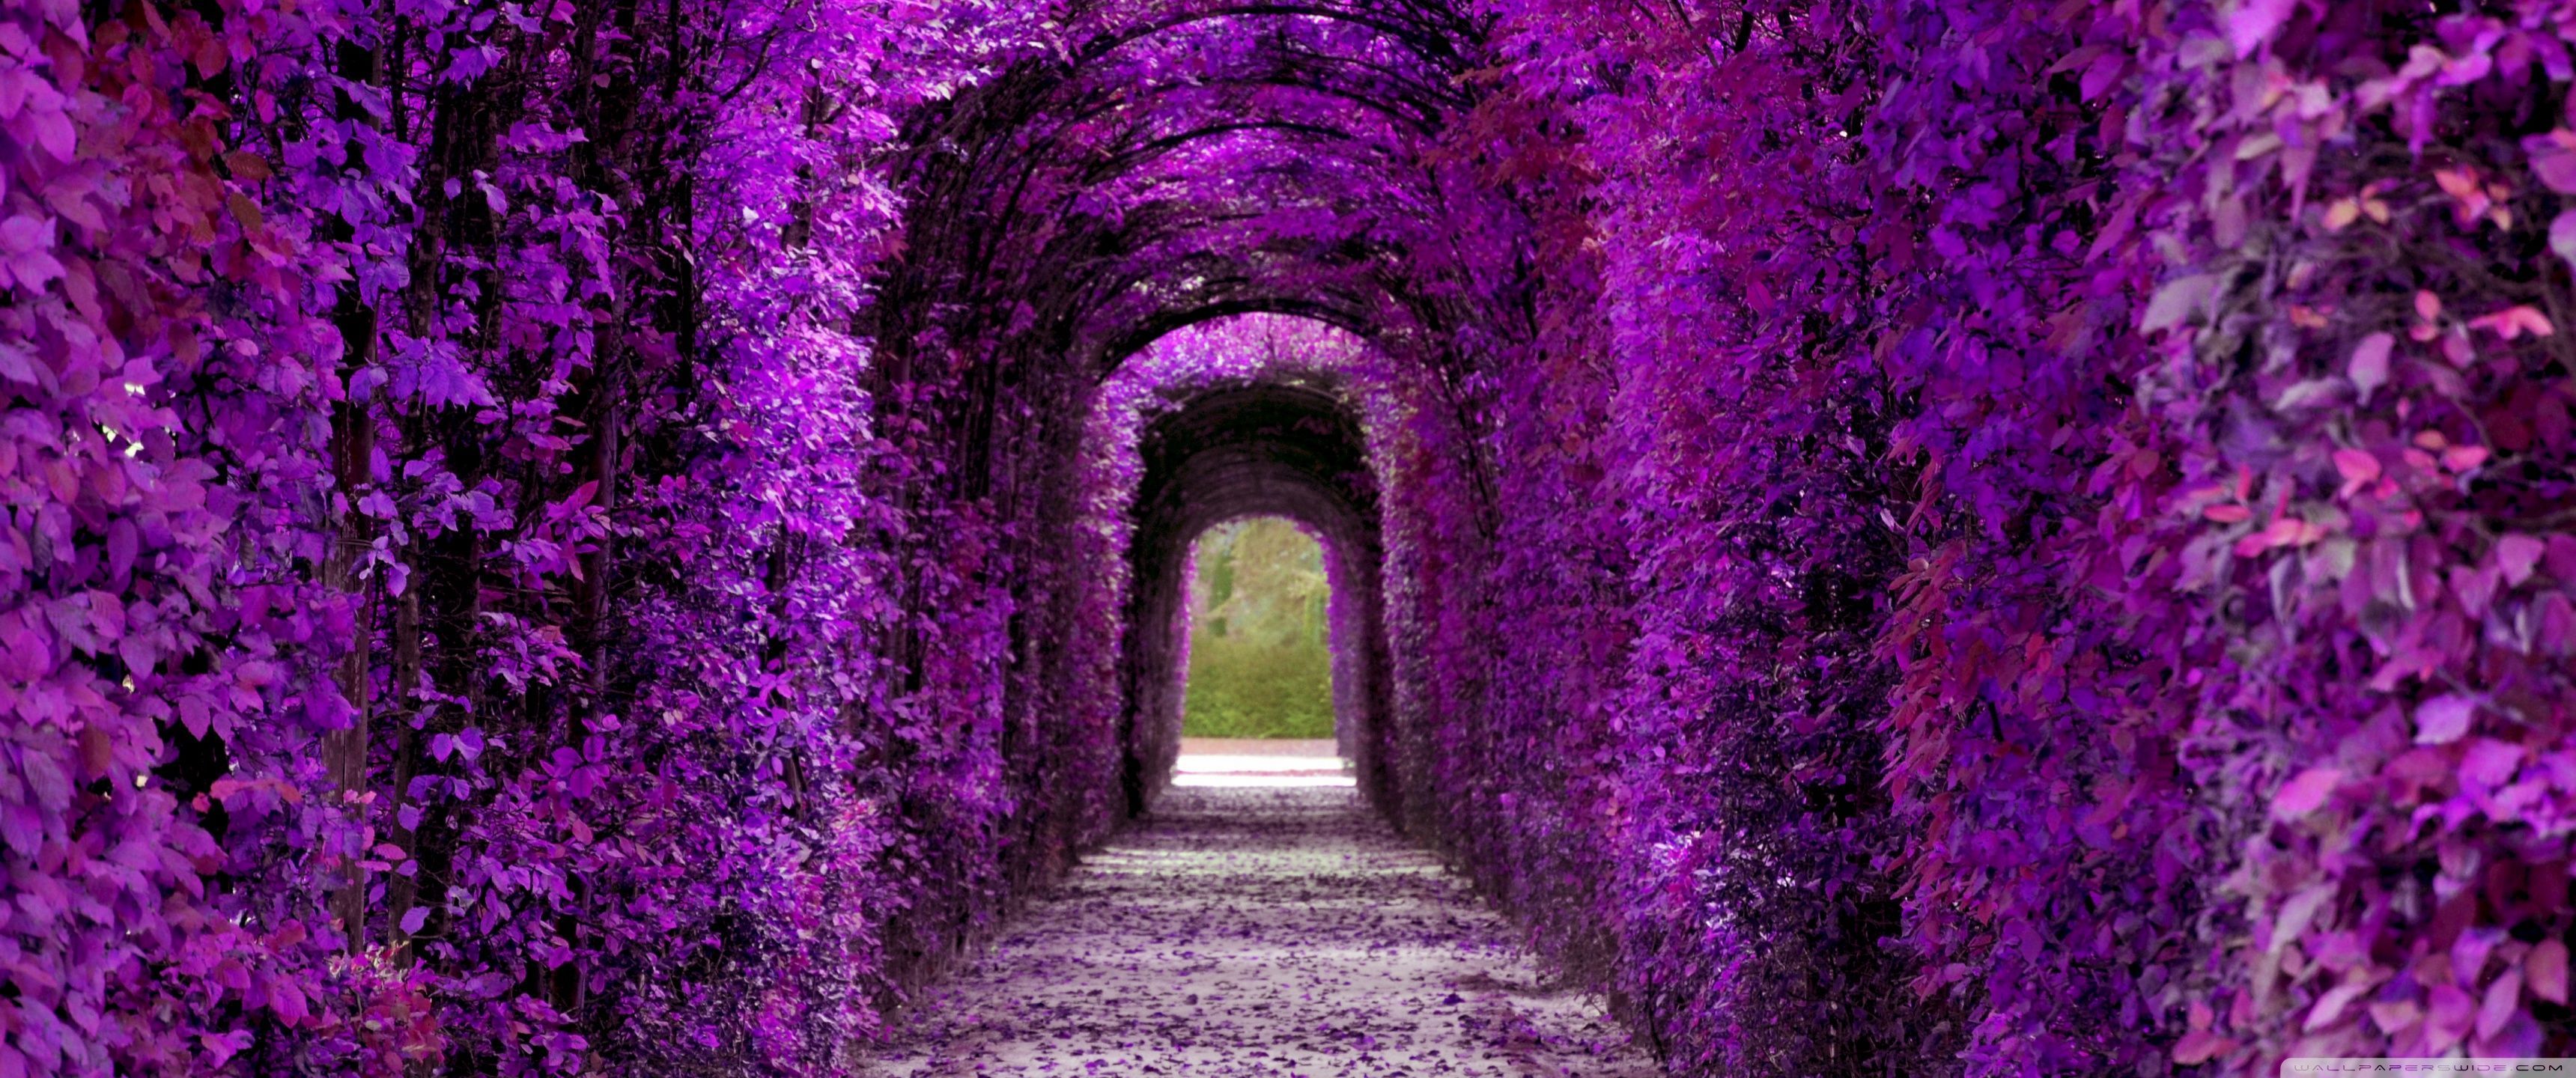 A tunnel of purple flowers wallpaper - 3440x1440